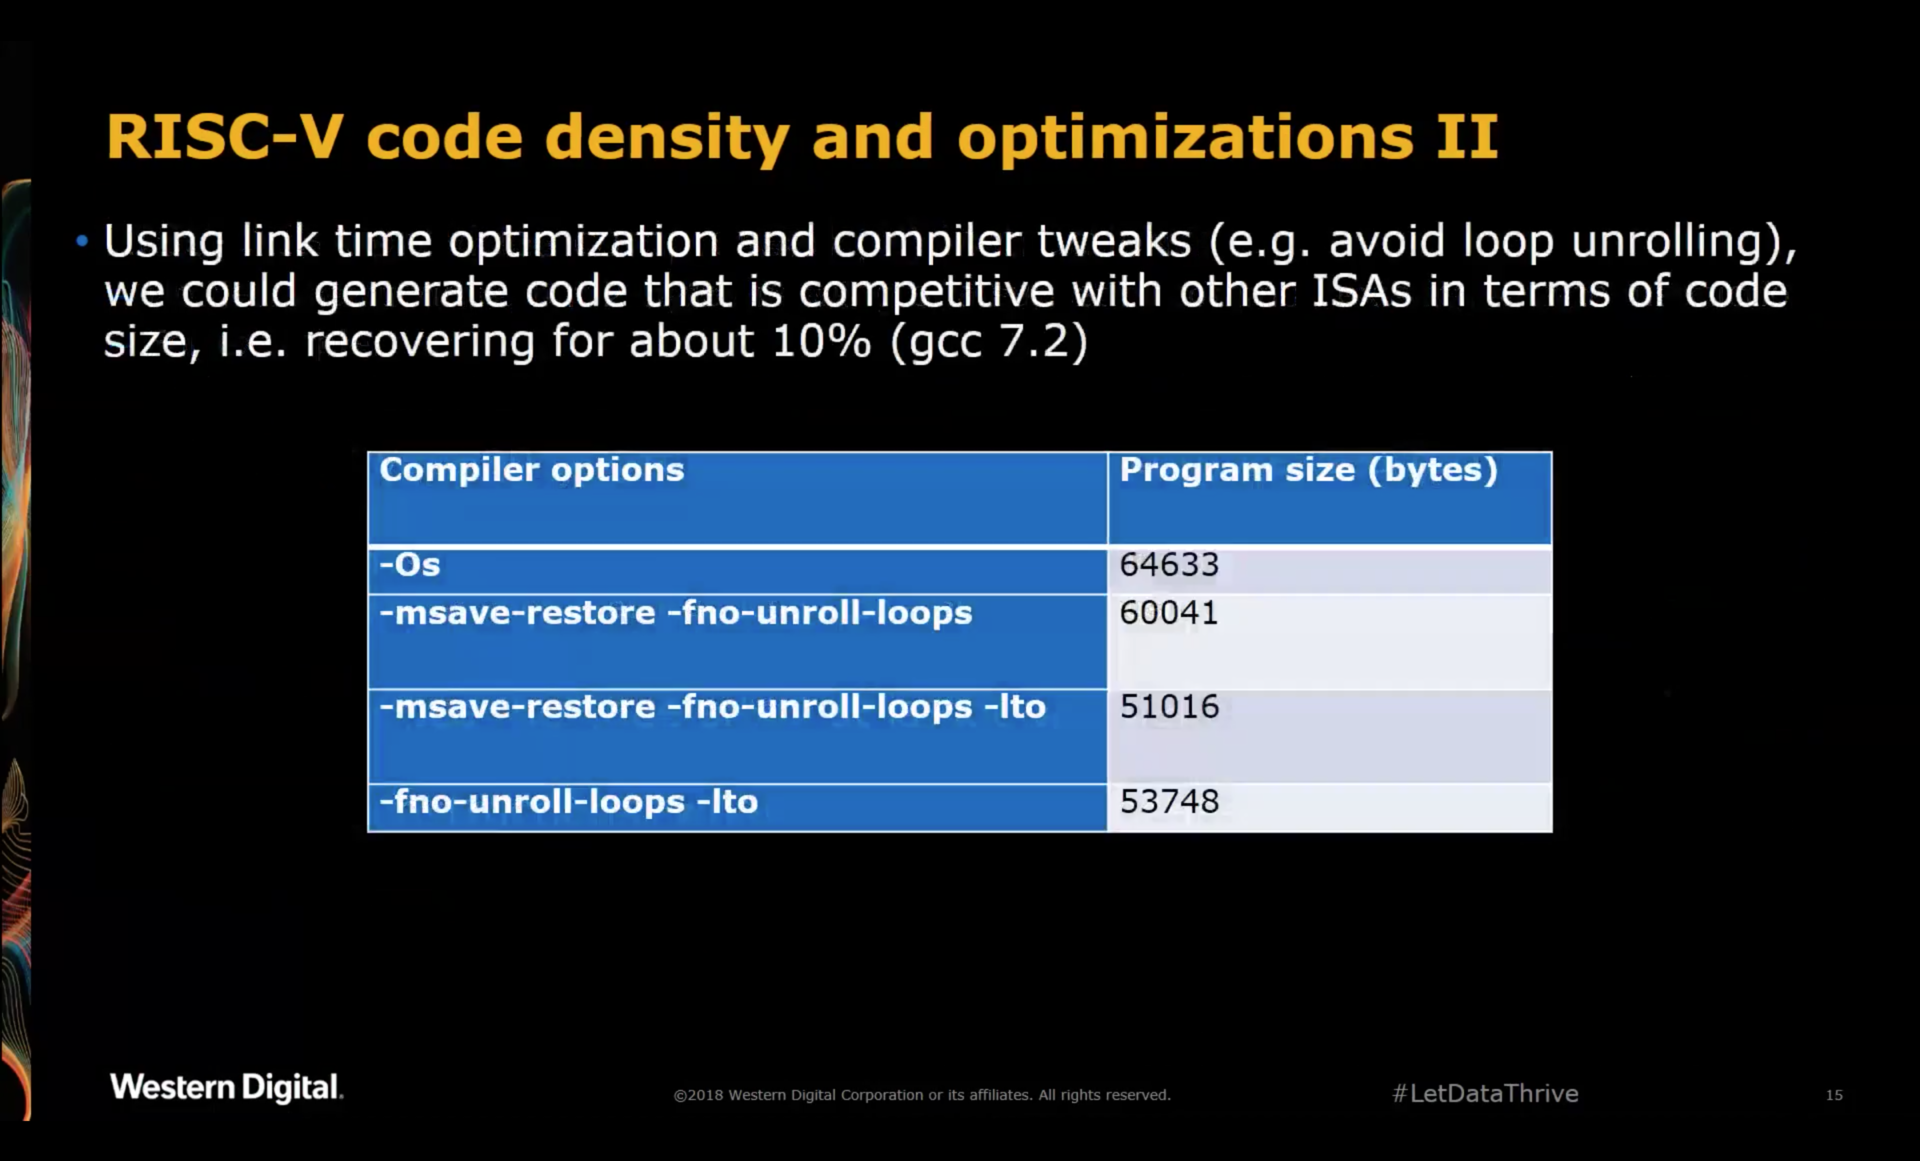 RISC-V Code Density and Optimization 2